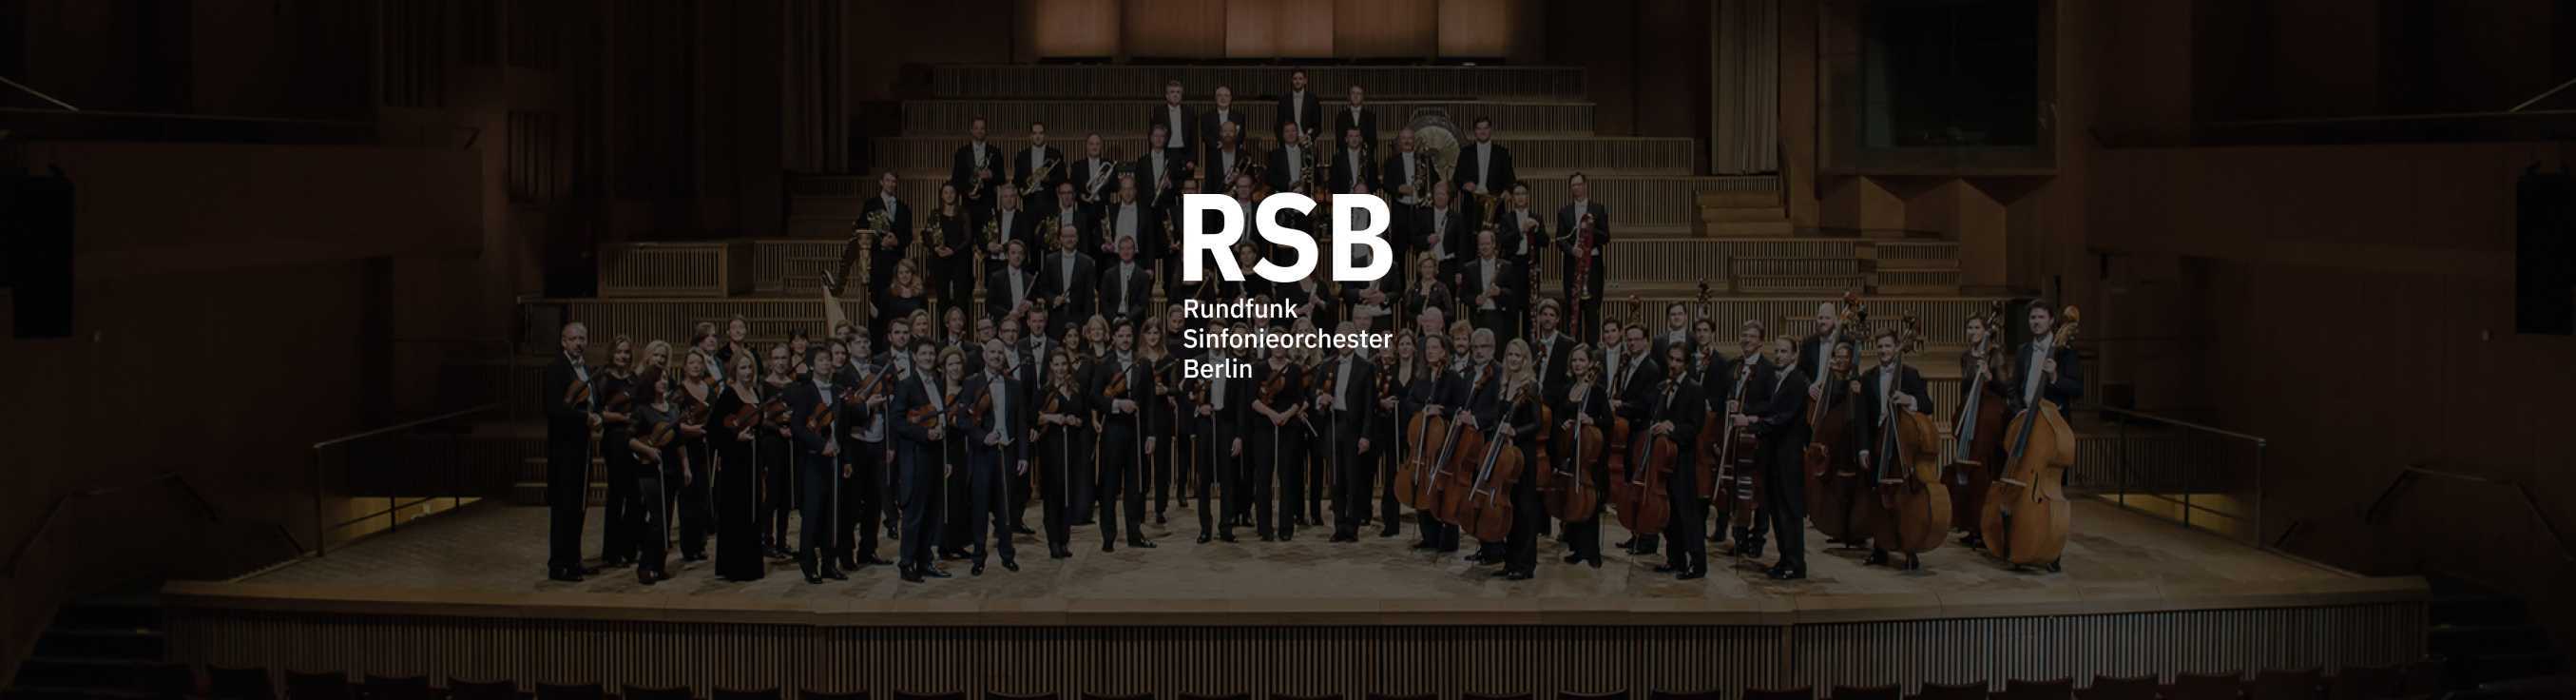 Rundfunk-Sinfonieorchester im Studio 14 - Die rbb Dachlounge